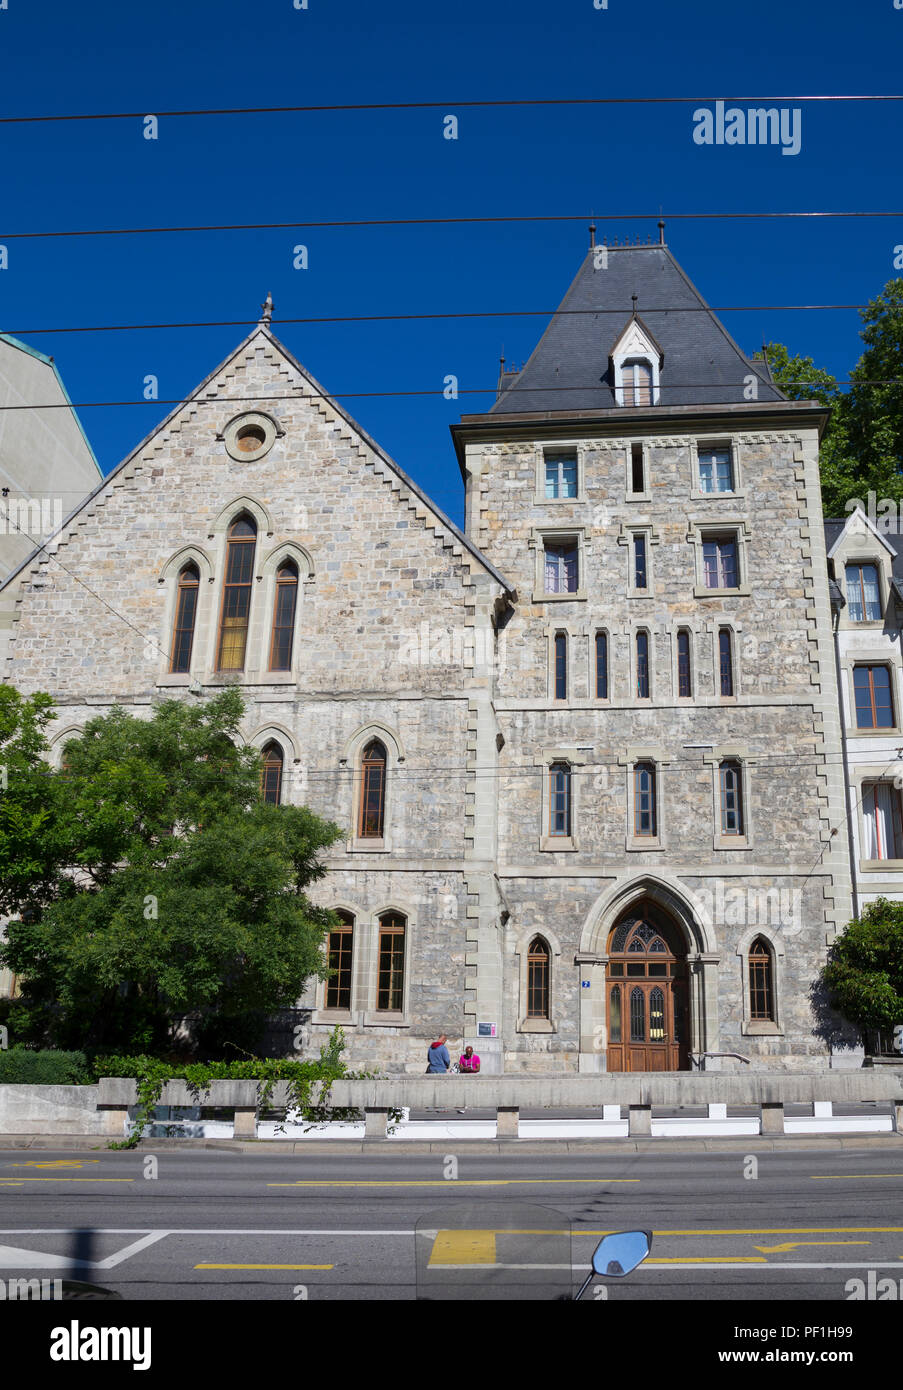 Eglise évangélique méthodiste de Lausanne, Suisse Banque D'Images